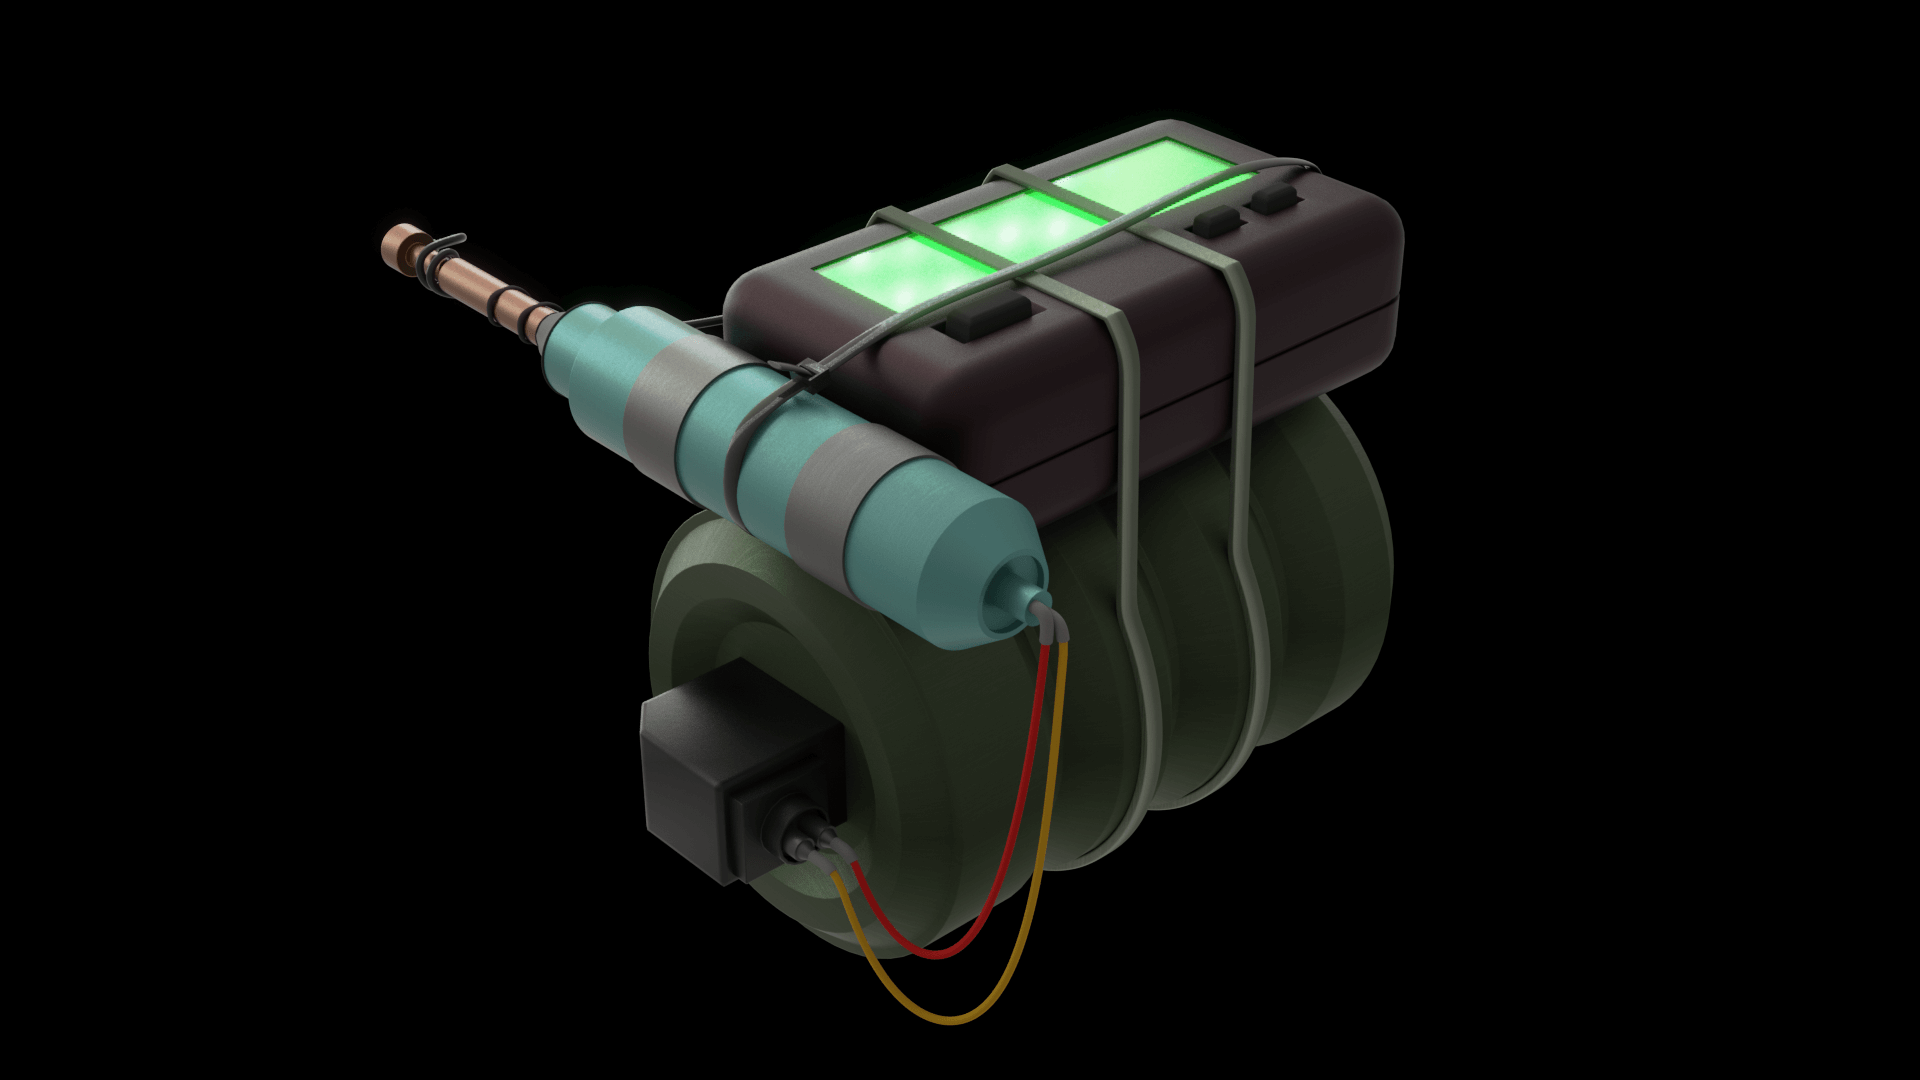 Emp grenade concept